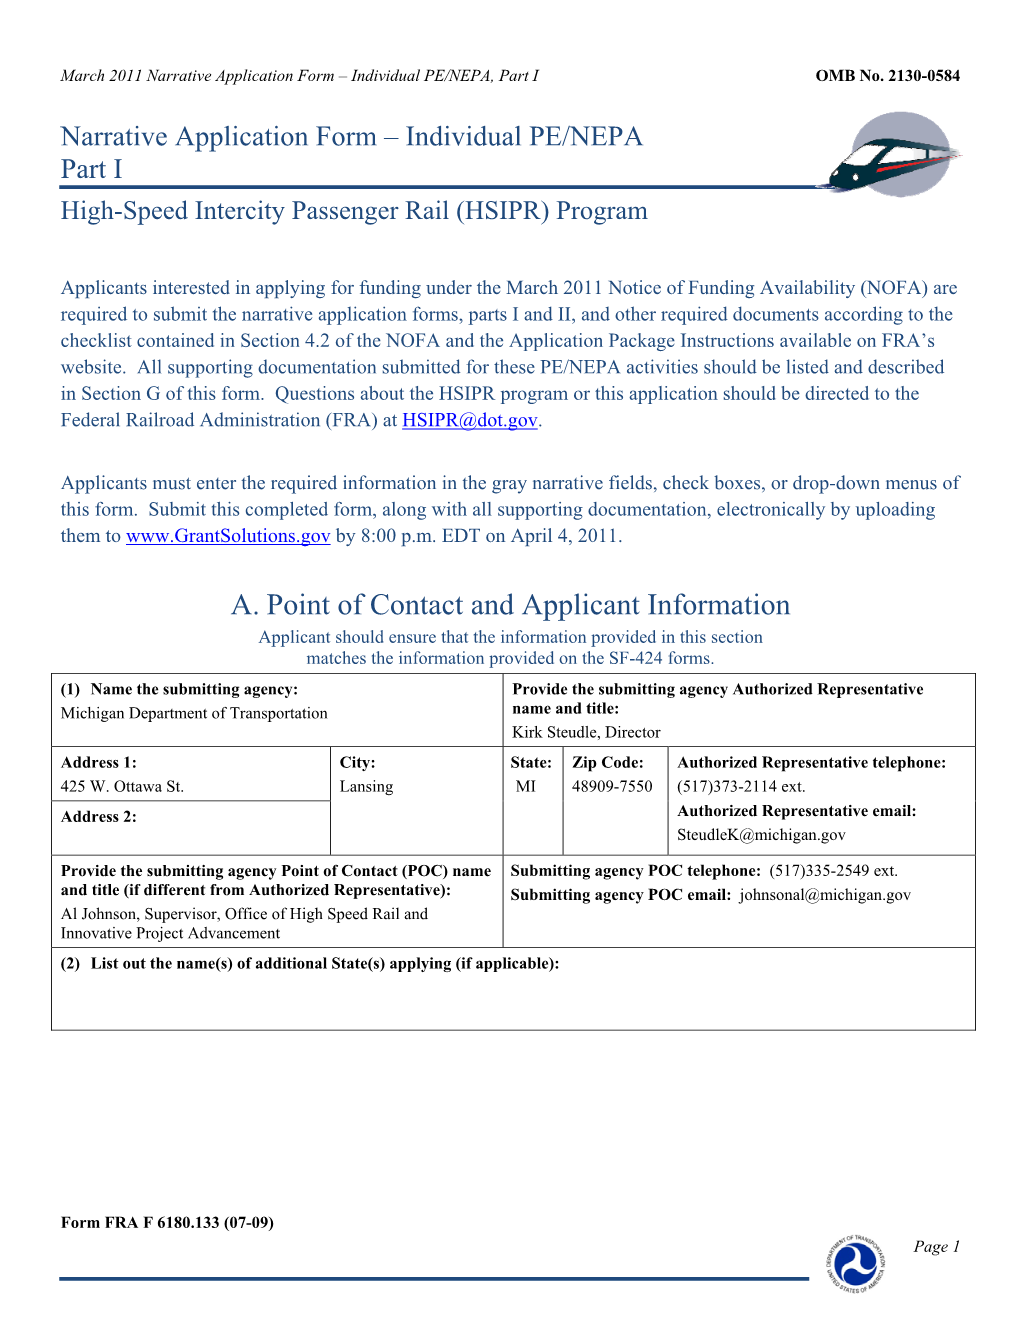 Preapplication for HSIPR Passenger Rail Program